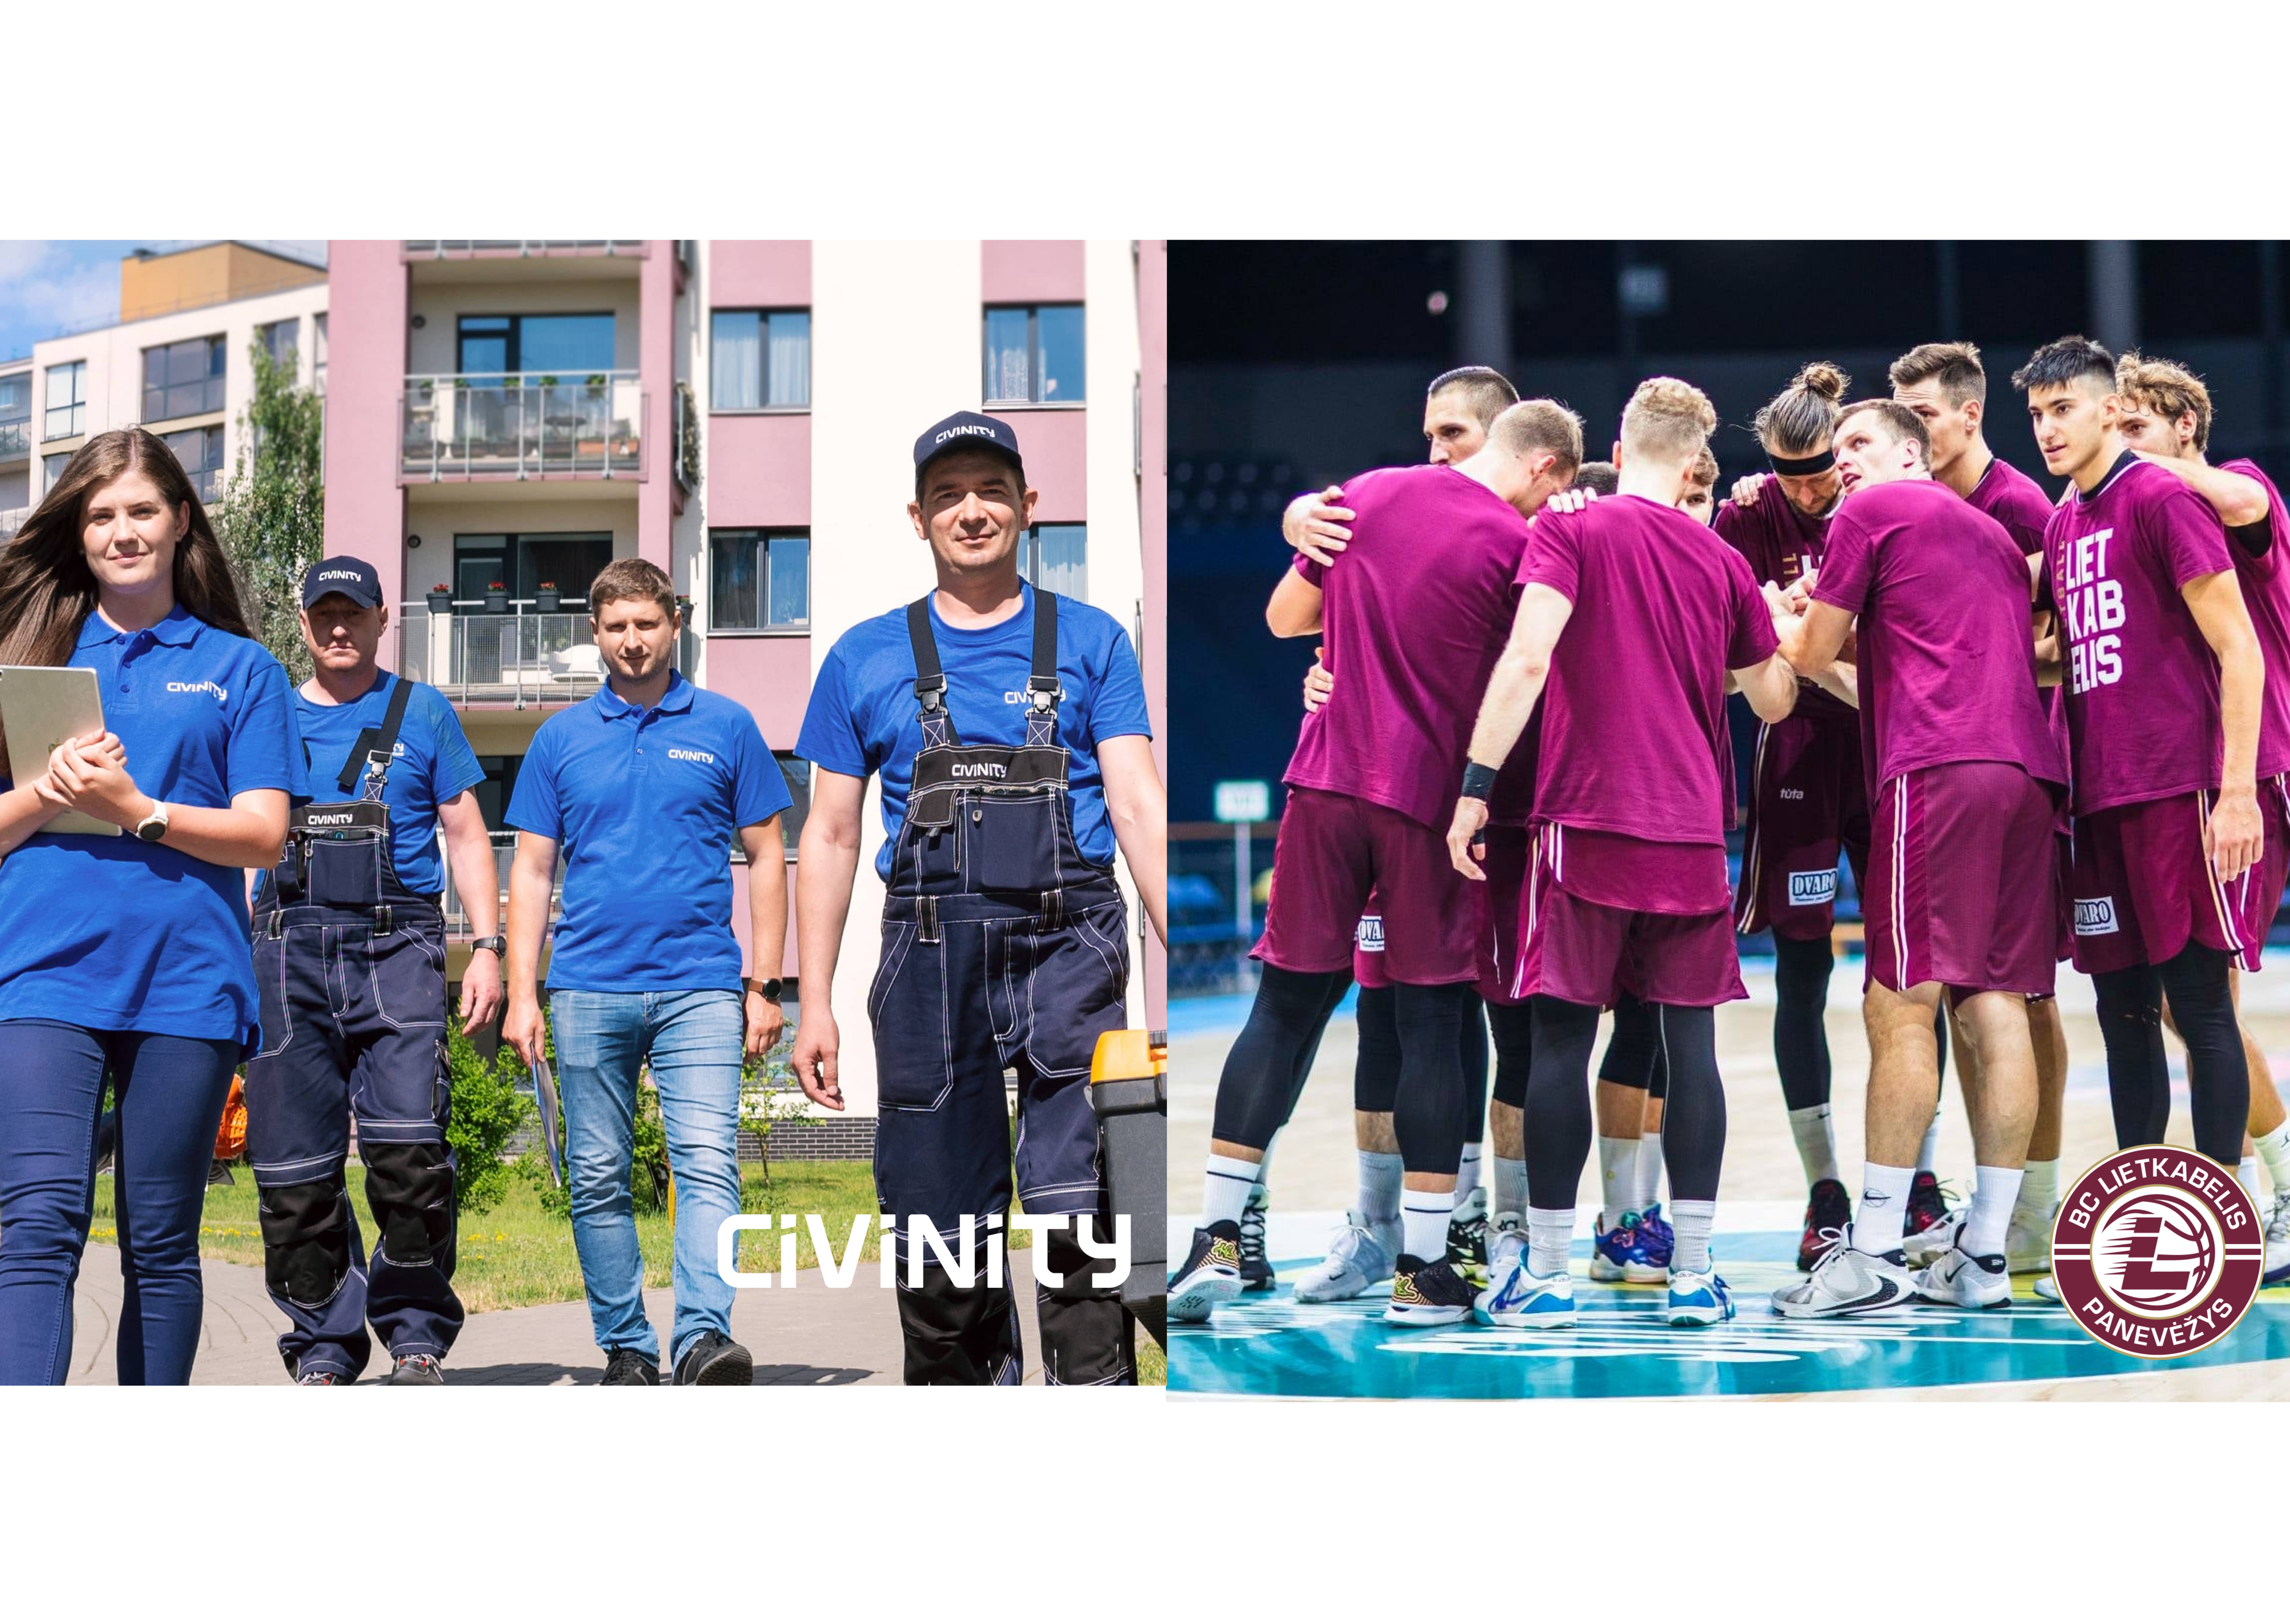 Dispensing complement Reduction Paņevežas basketbola komanda ”Lietkabelis” jauno sezonu sāk ar jaunu  sponsoru. - Civinity Engineering